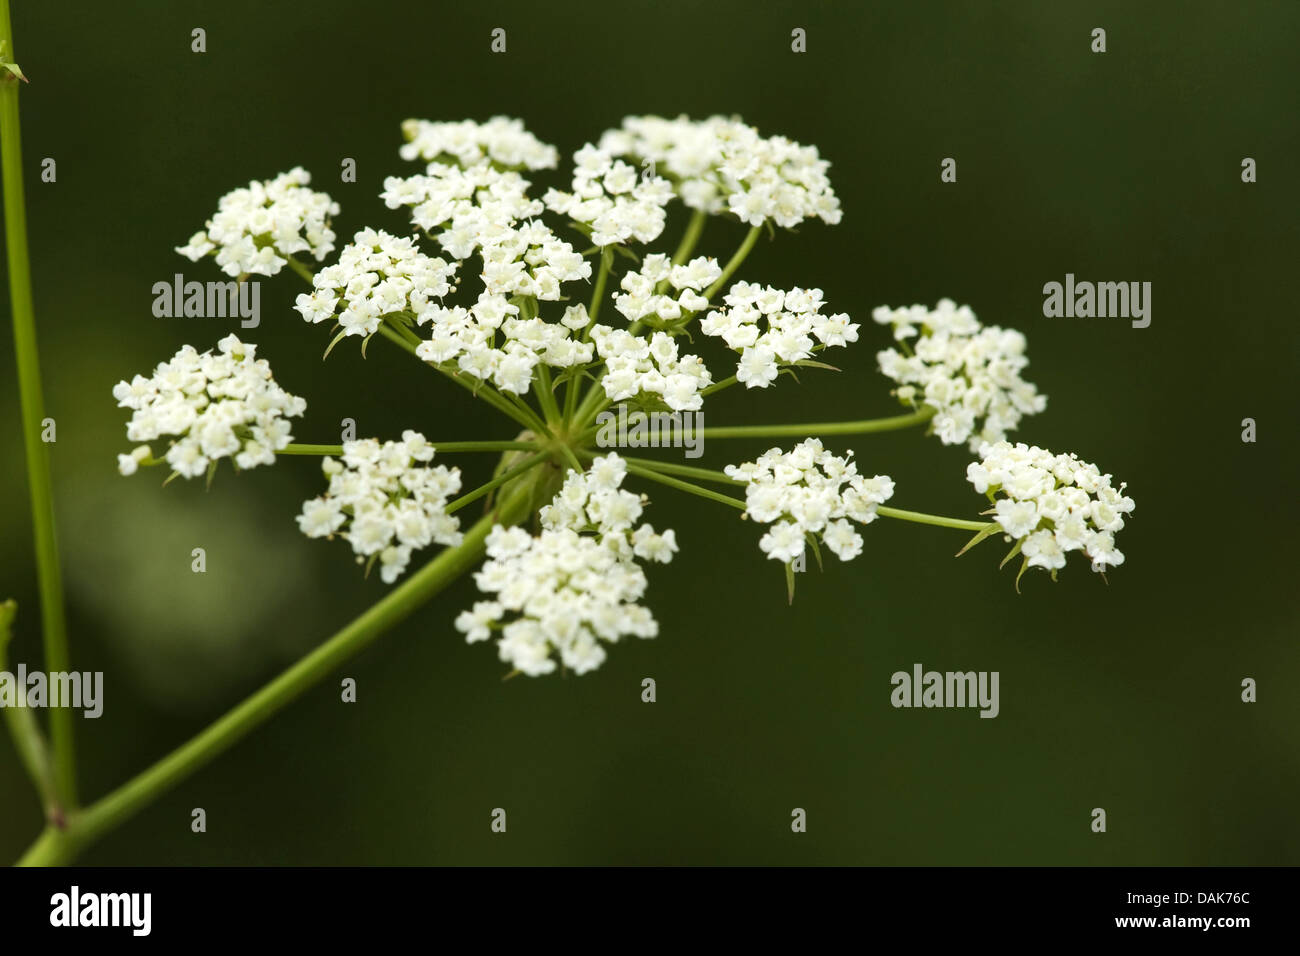 Skirret, Crummock (Sium sisarum), inflorescence Stock Photo